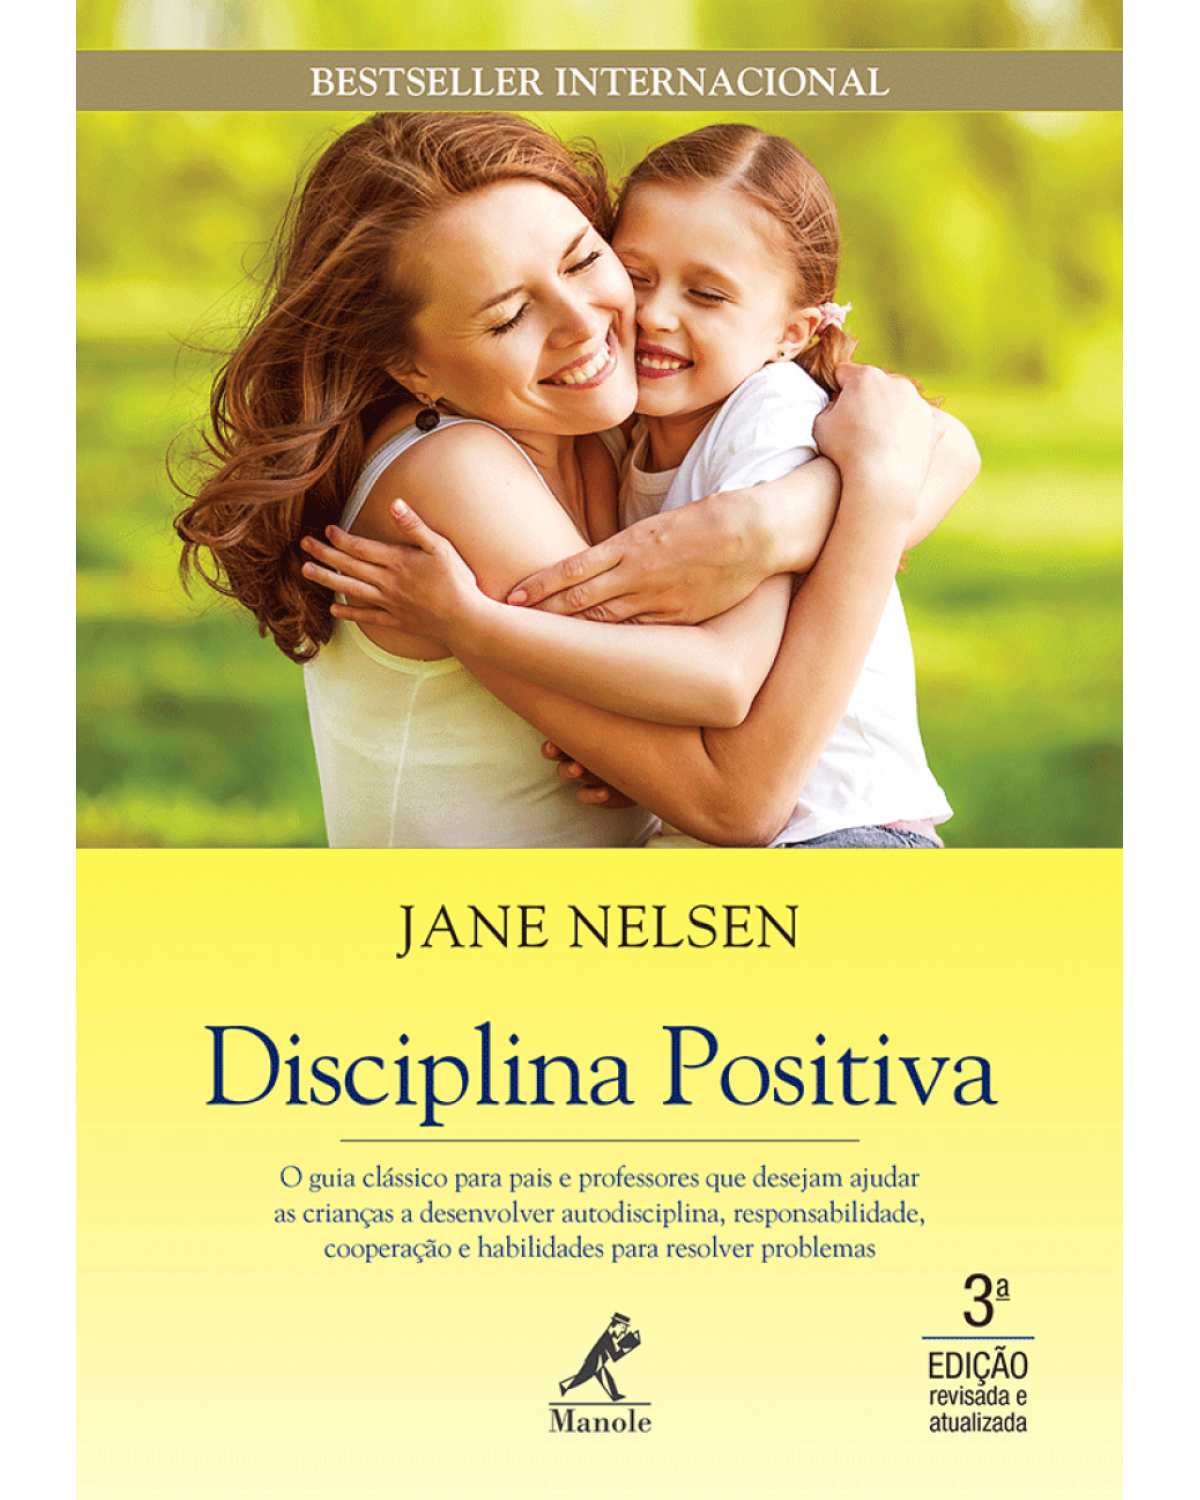 Disciplina positiva - O guia clássico para pais e professores que desejam ajudar as crianças a desenvolver autodisciplina, responsabilidade, cooperação e habilidades para resolver problemas - 3ª Edição | 2015